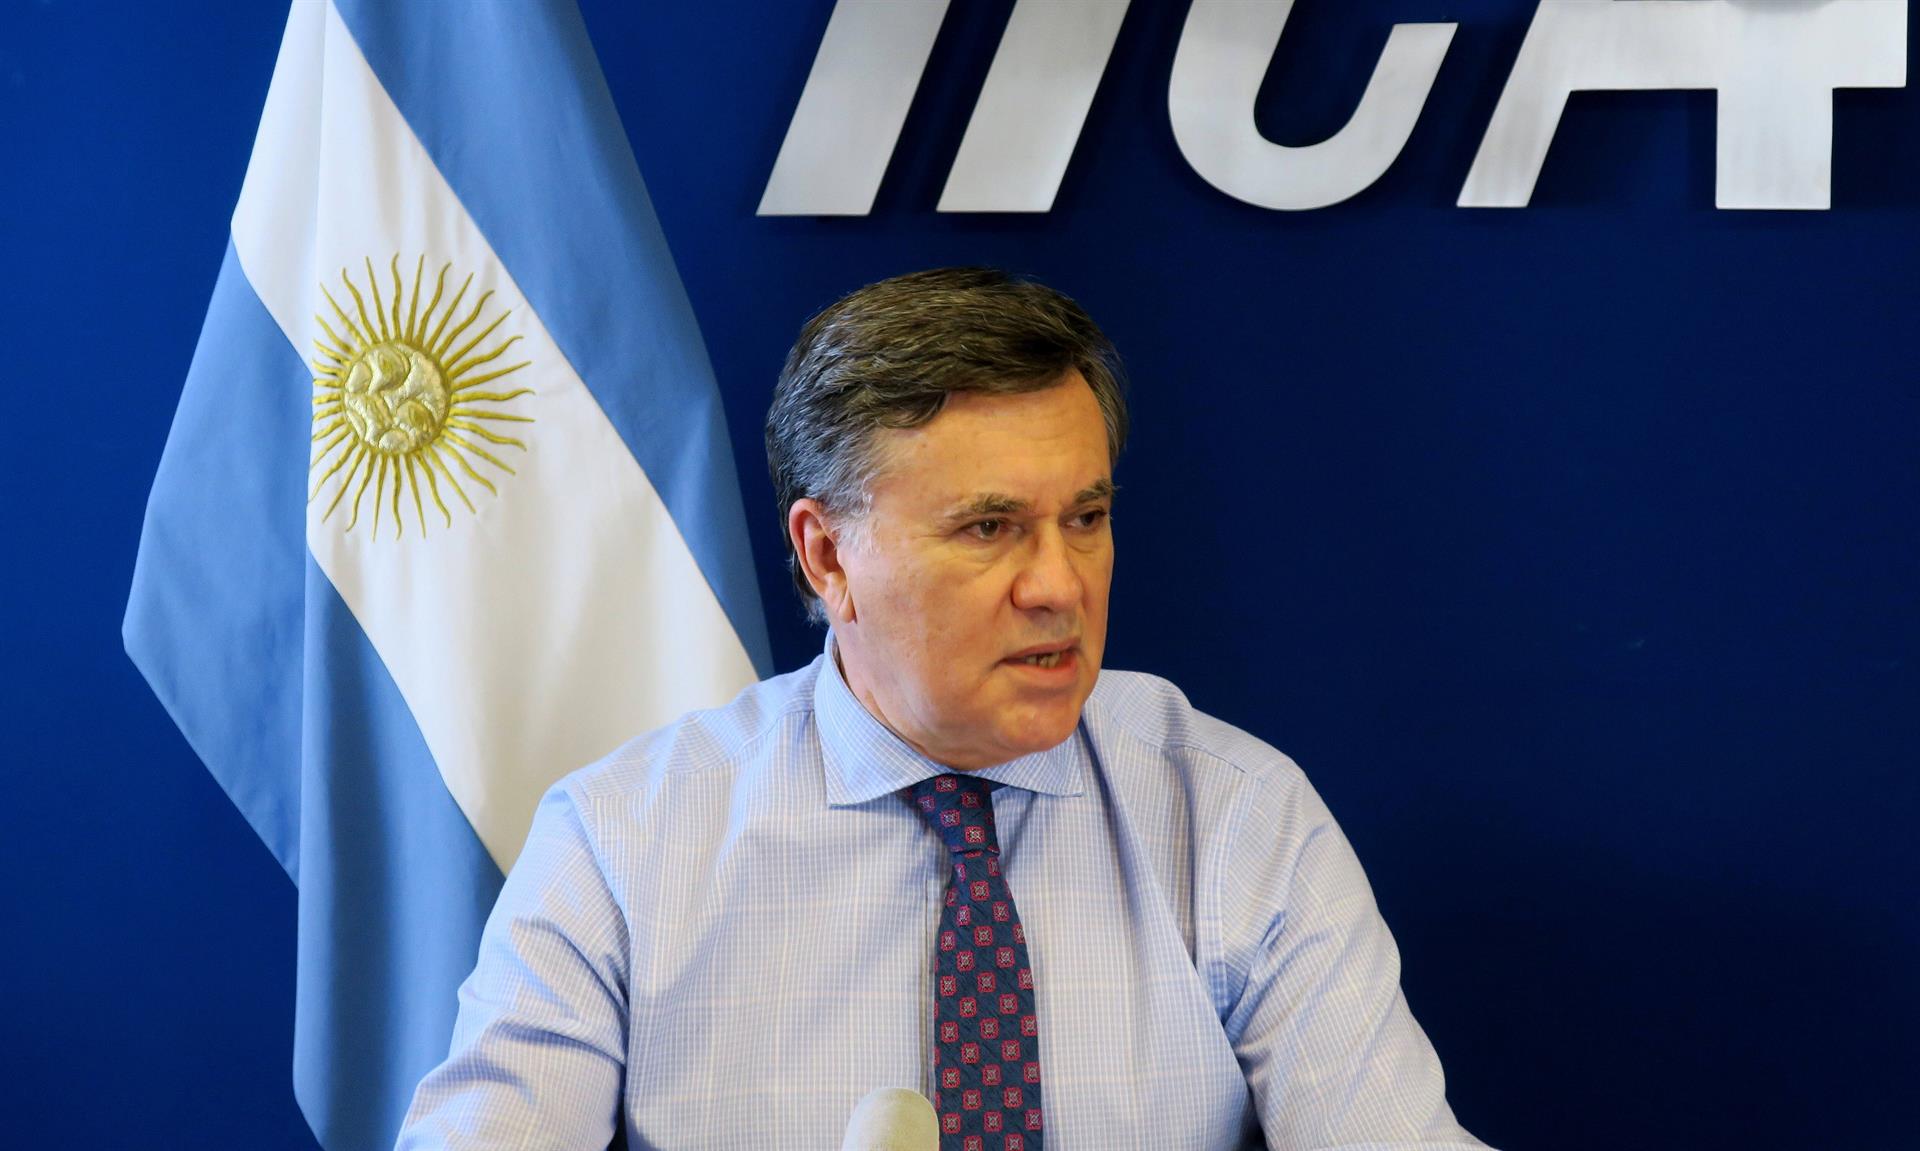 El director general del Instituto Interamericano de Cooperación para la Agricultura (IICA), el argentino Manuel Otero. Efeagro/Natalia Kidd